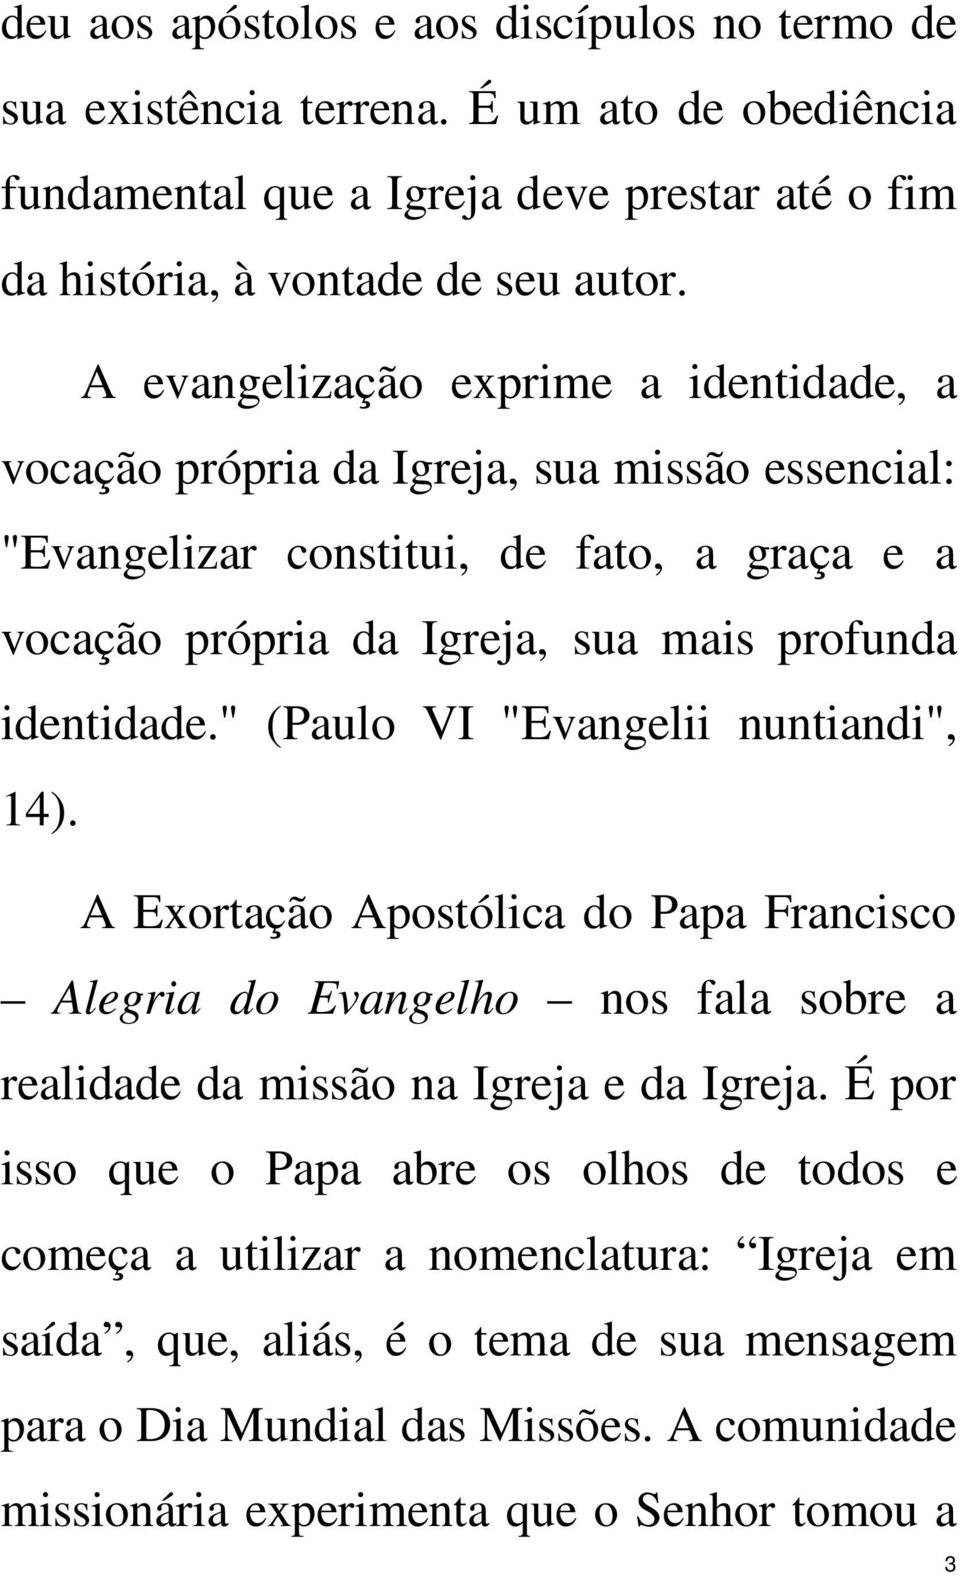 " (Paulo VI "Evangelii nuntiandi", 14). A Exortação Apostólica do Papa Francisco Alegria do Evangelho nos fala sobre a realidade da missão na Igreja e da Igreja.